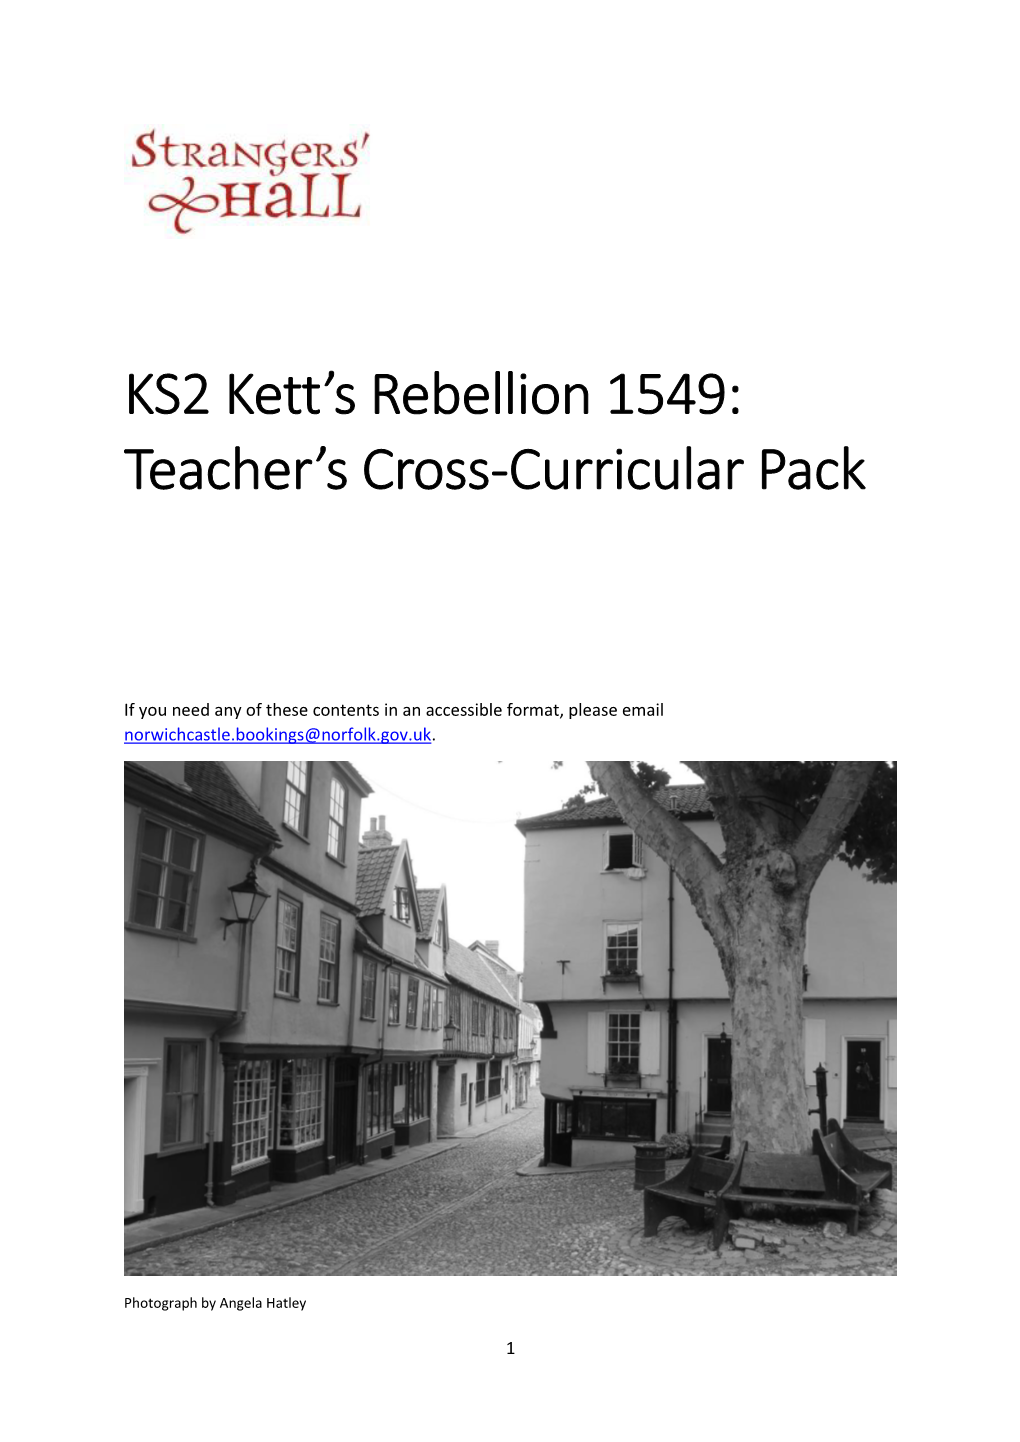 KS2 Kett's Rebellion 1549: Teacher's Cross-Curricular Pack